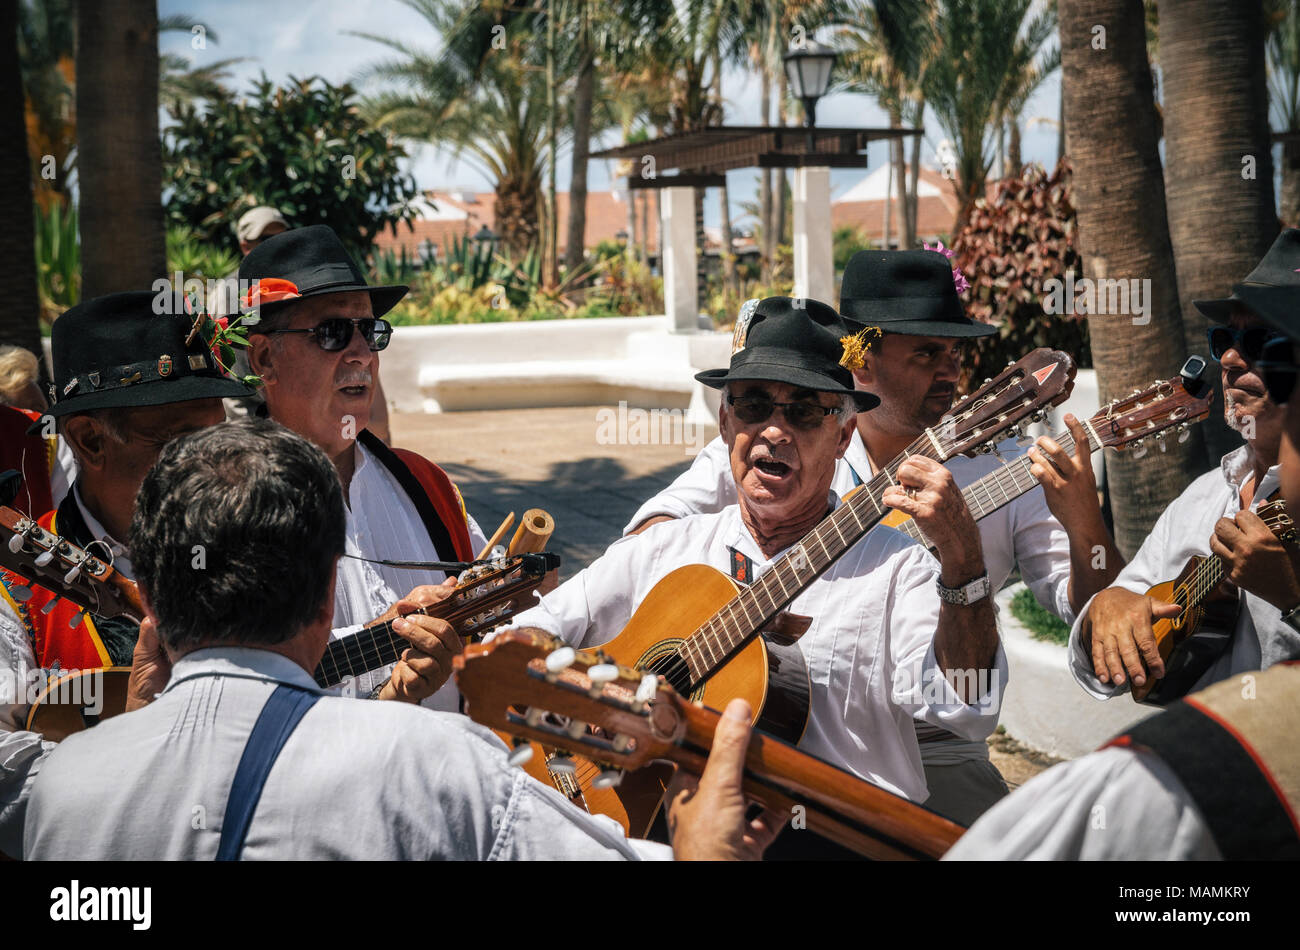 Puerto de la Cruz, Tenerife, Islas Canarias - Mayo 30, 2017: Canarias personas vestidas con ropas tradicionales caminar por la calle, firmar y tocar la guitarra Foto de stock